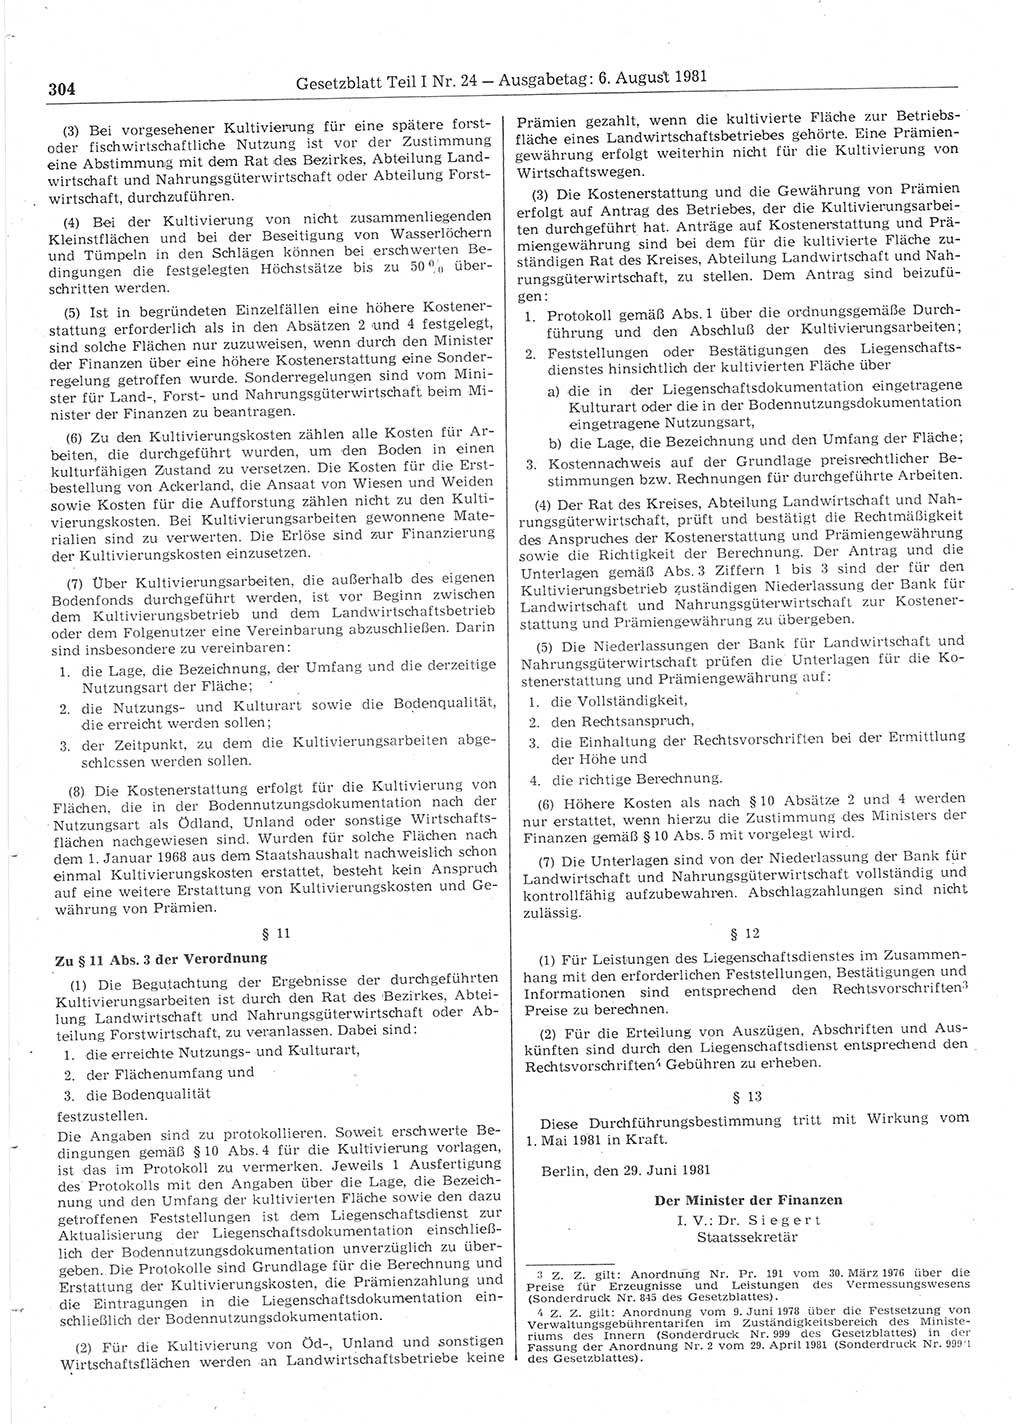 Gesetzblatt (GBl.) der Deutschen Demokratischen Republik (DDR) Teil Ⅰ 1981, Seite 304 (GBl. DDR Ⅰ 1981, S. 304)